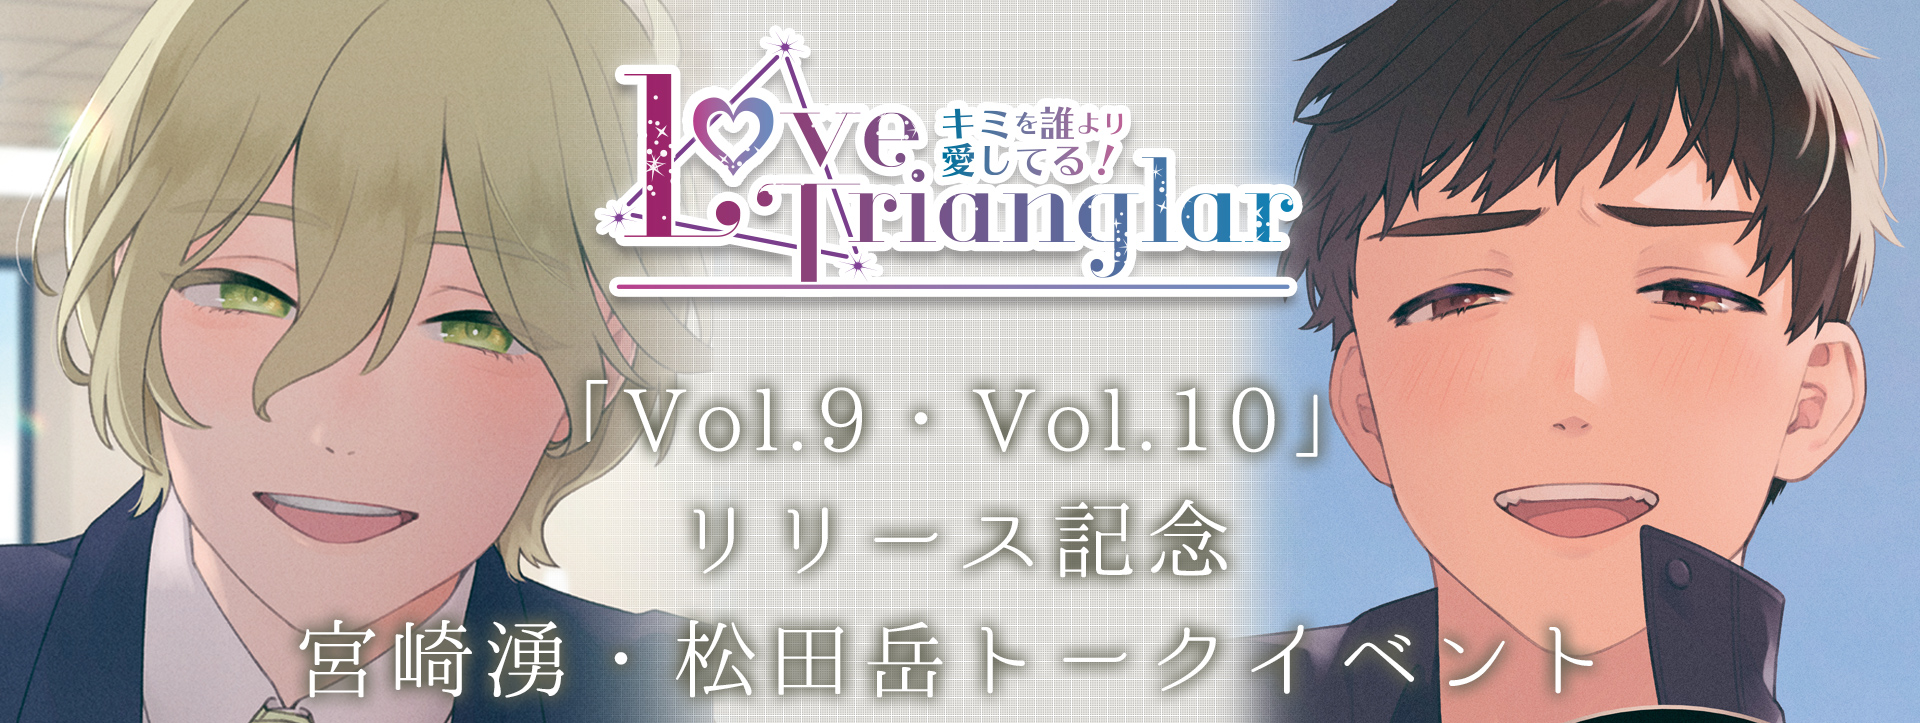 【ラブ・トライアングラー】Love Trianglar～キミを誰より愛してる！ Vol.9-10 イベント特設サイト 二人の彼、アナタはどちらを選ぶ？